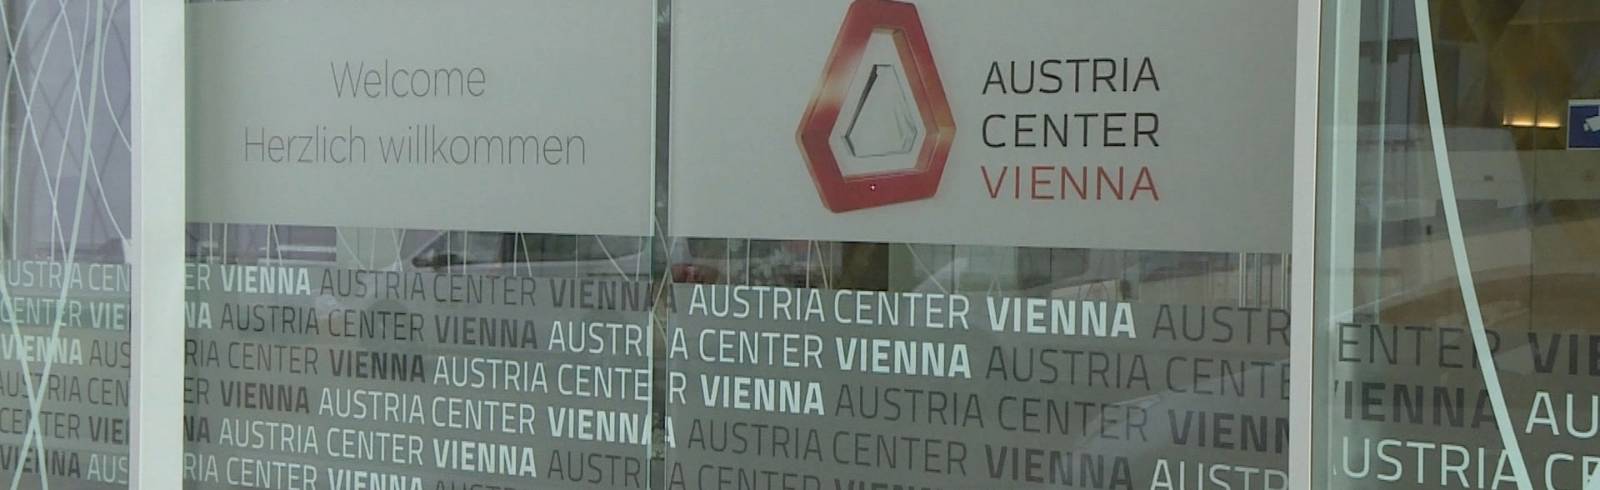 Bezirke: Austria Center wird modernisiert